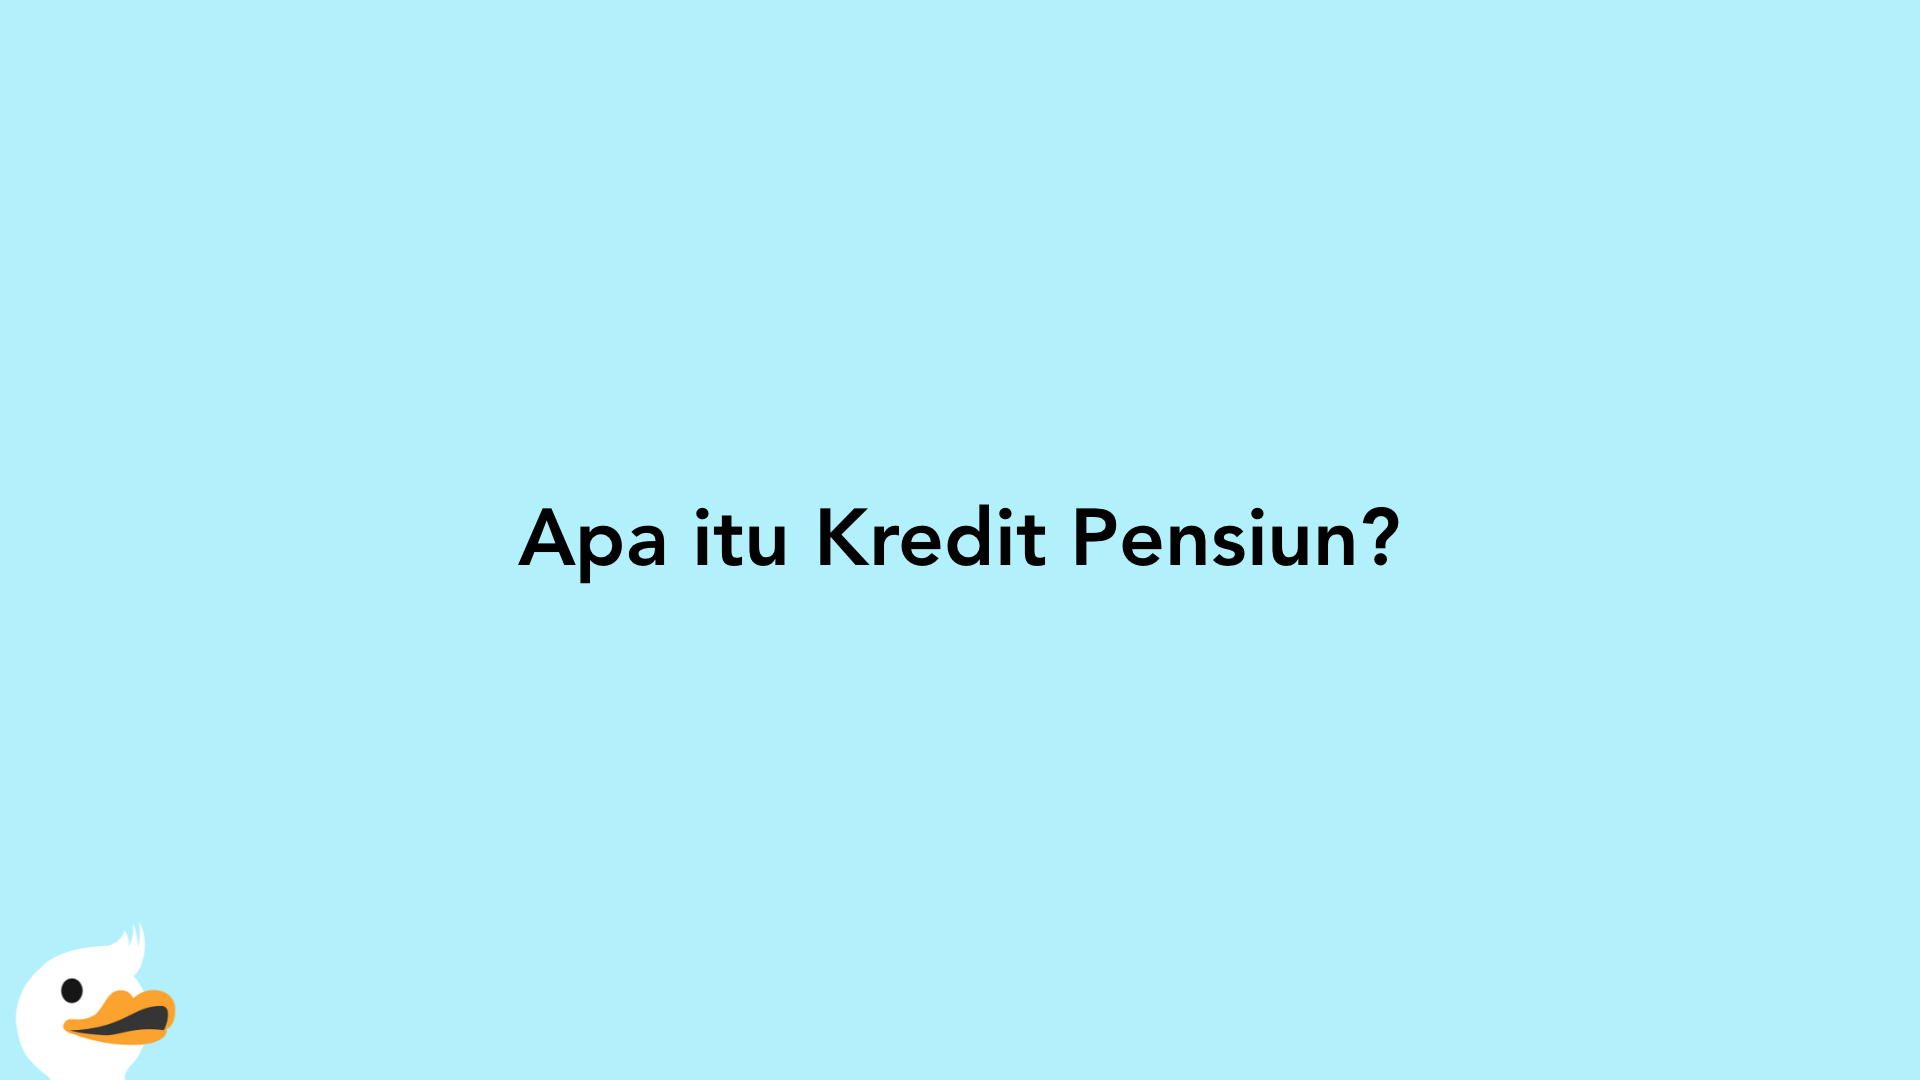 Apa itu Kredit Pensiun?